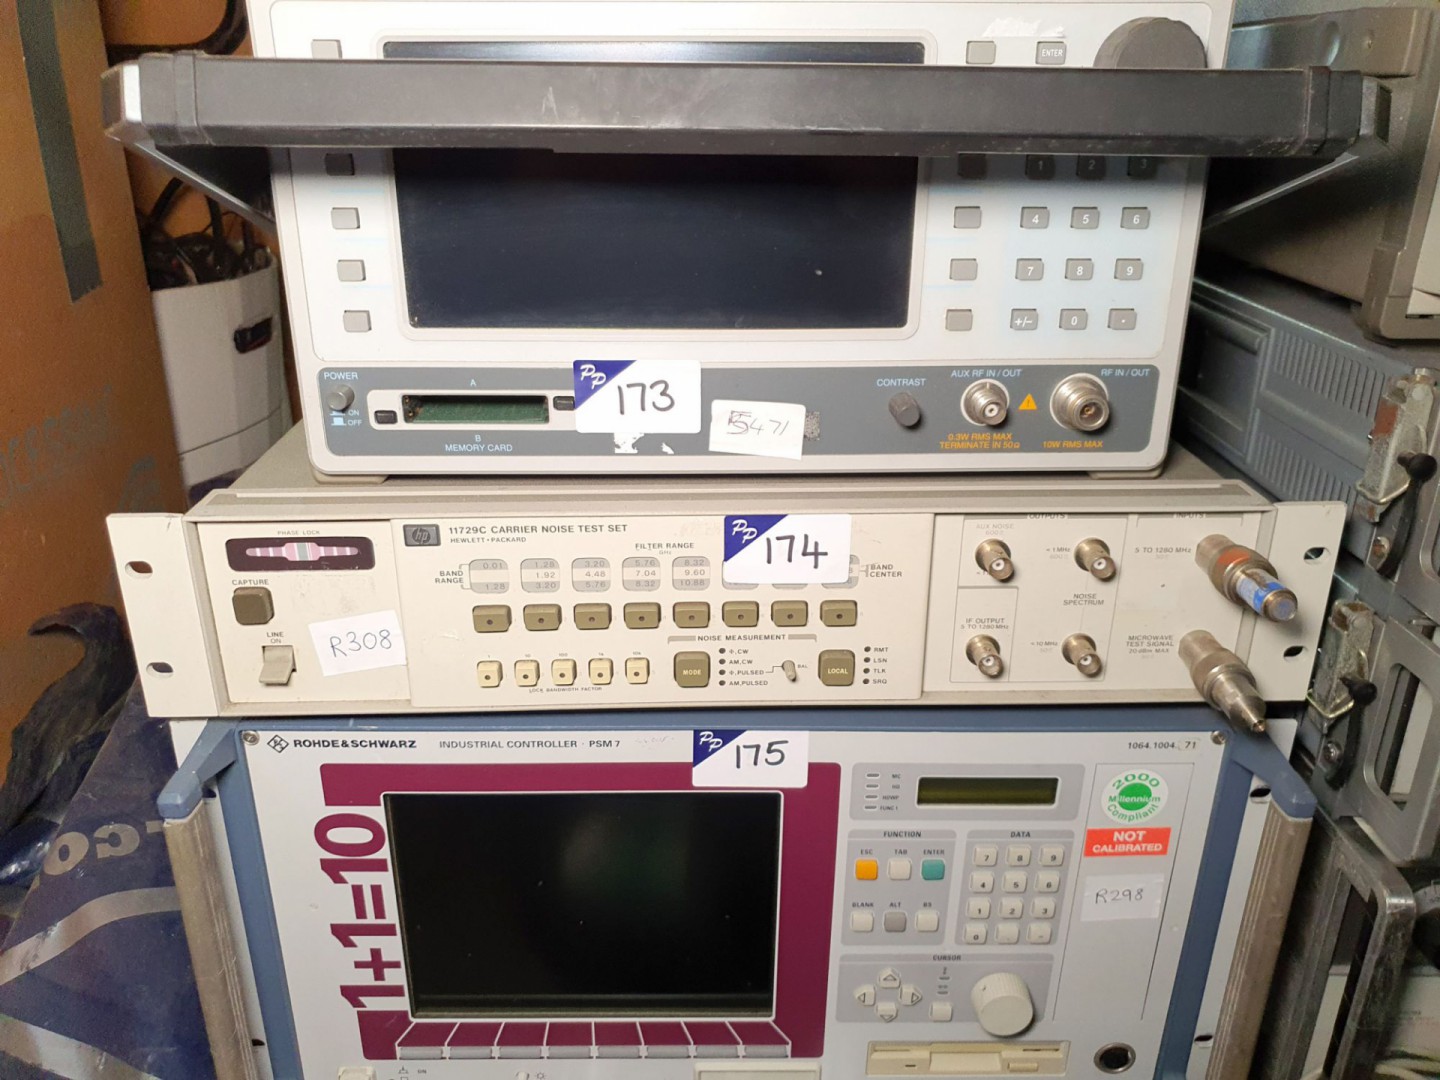 HP 11729C carrier noise test set (R308)